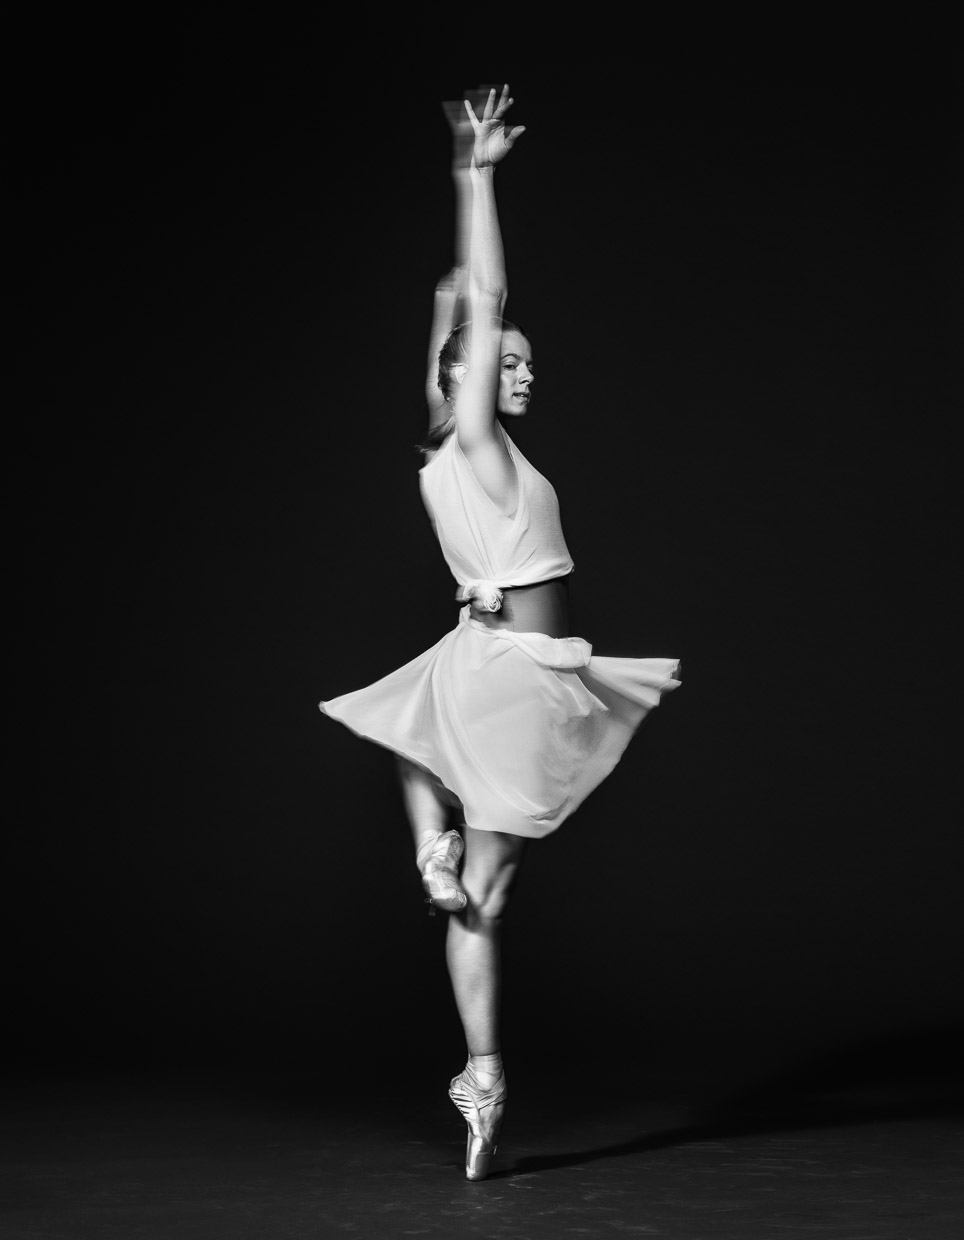 Lauren Post, American Ballet Theatre. Personal work.